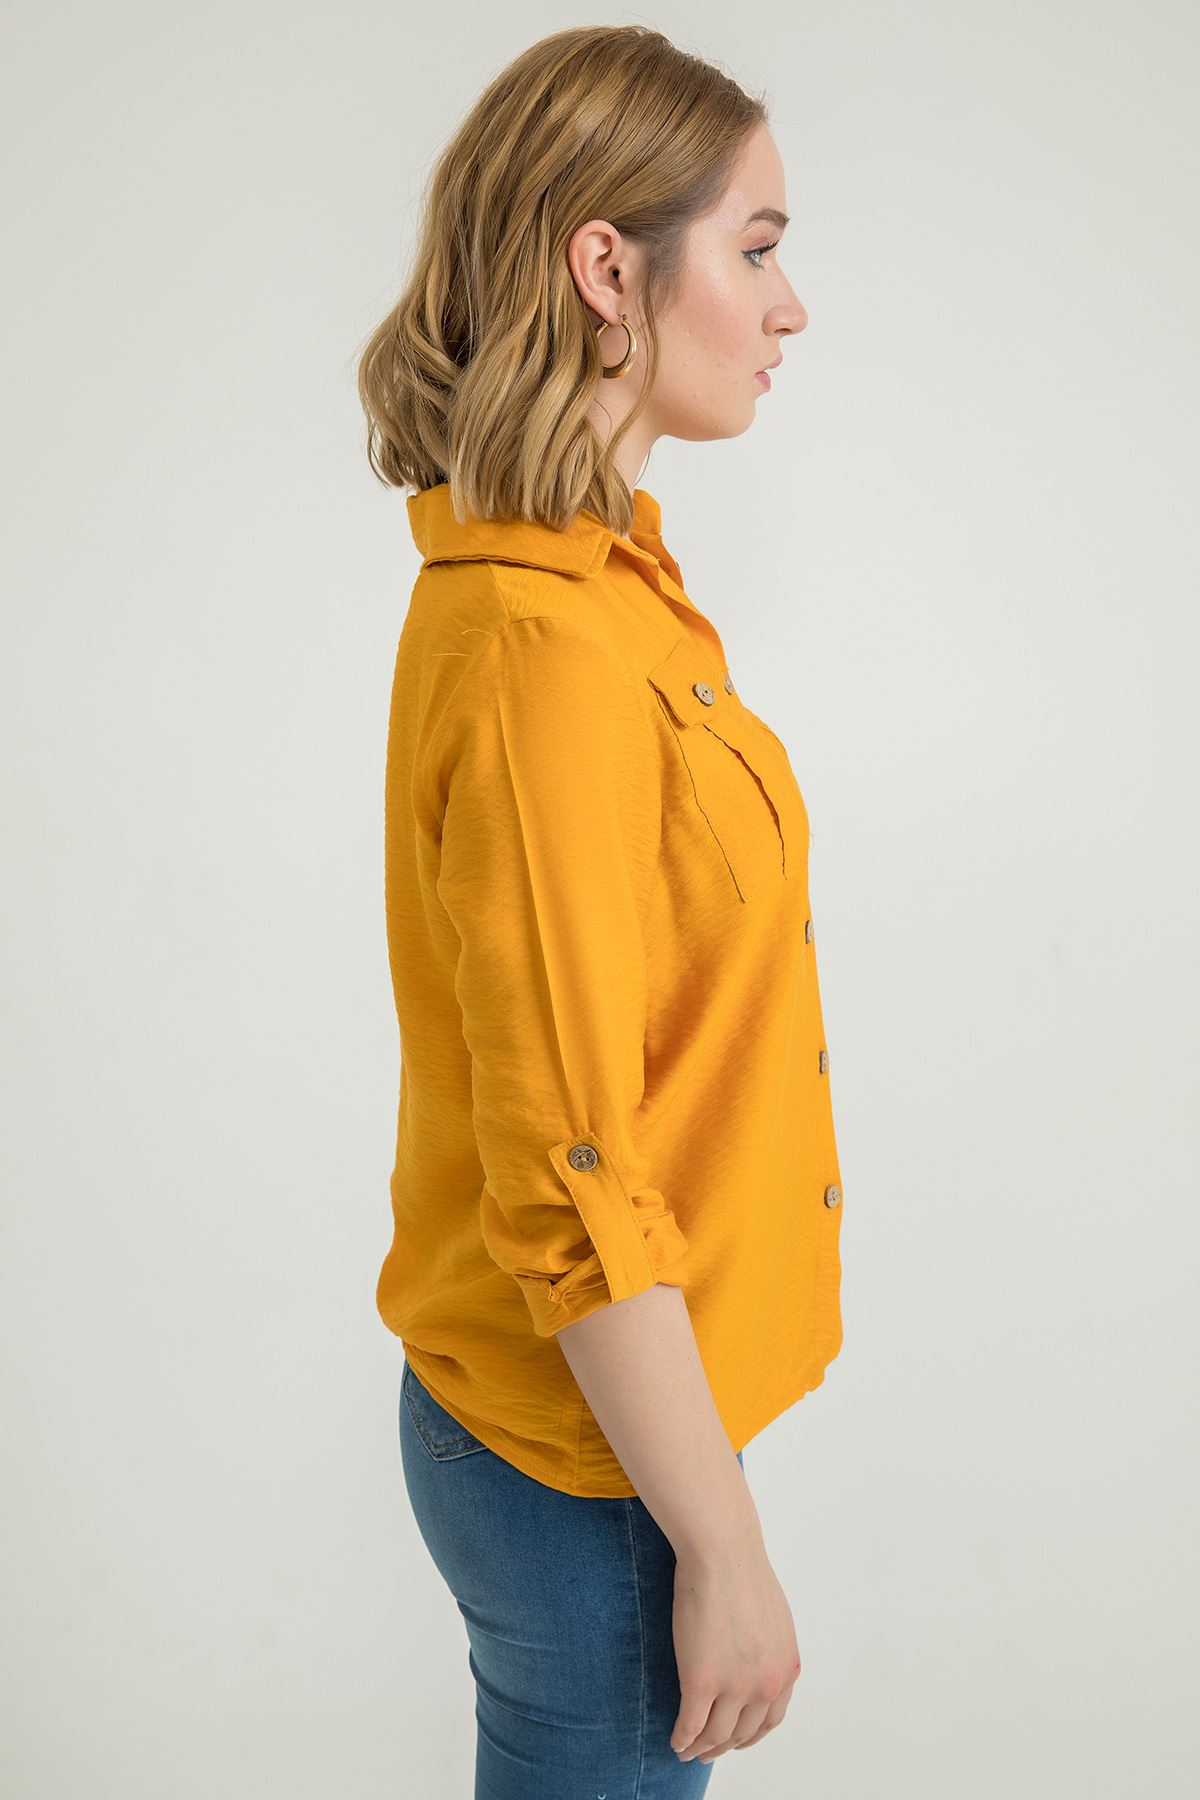 Aerobin Fabric Long Sleeve Shirt Collar Below Hip Full Fit Women'S Shirt - Mustard